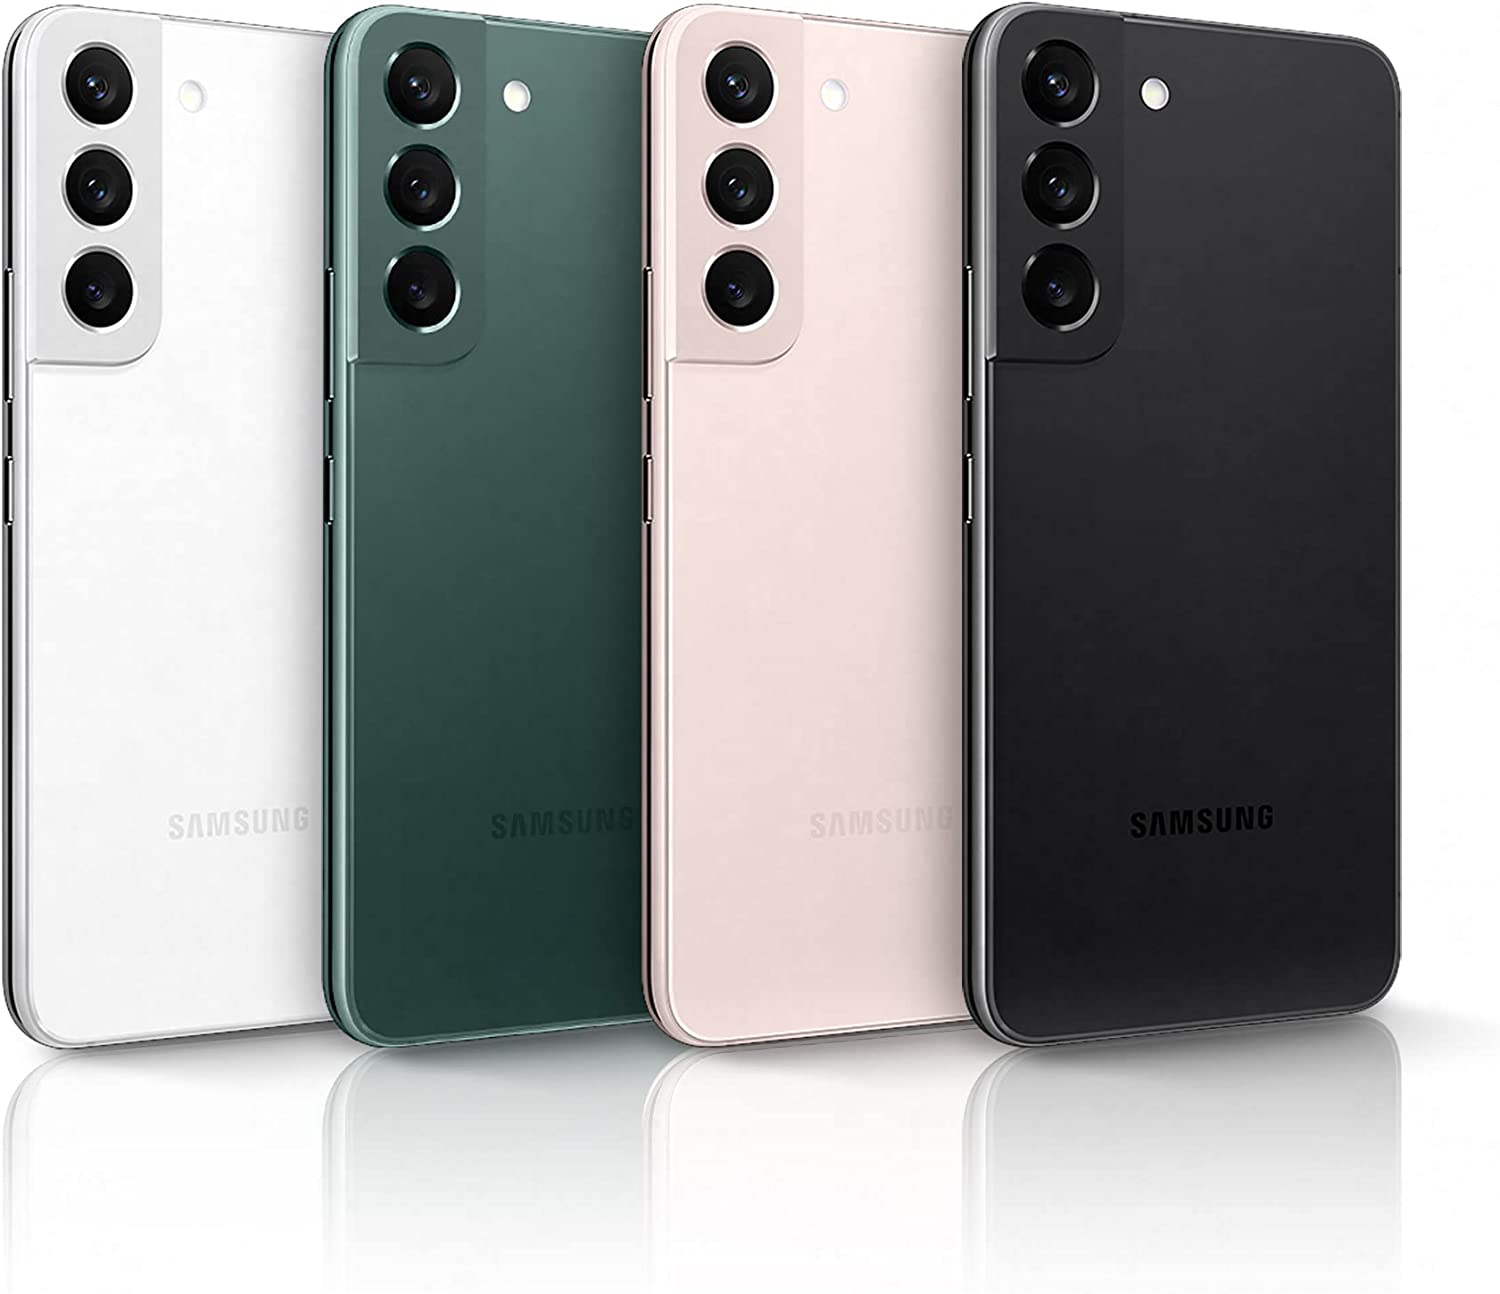 Prezzo Samsung Galaxy S22: da Trony in offerta a 720 euro